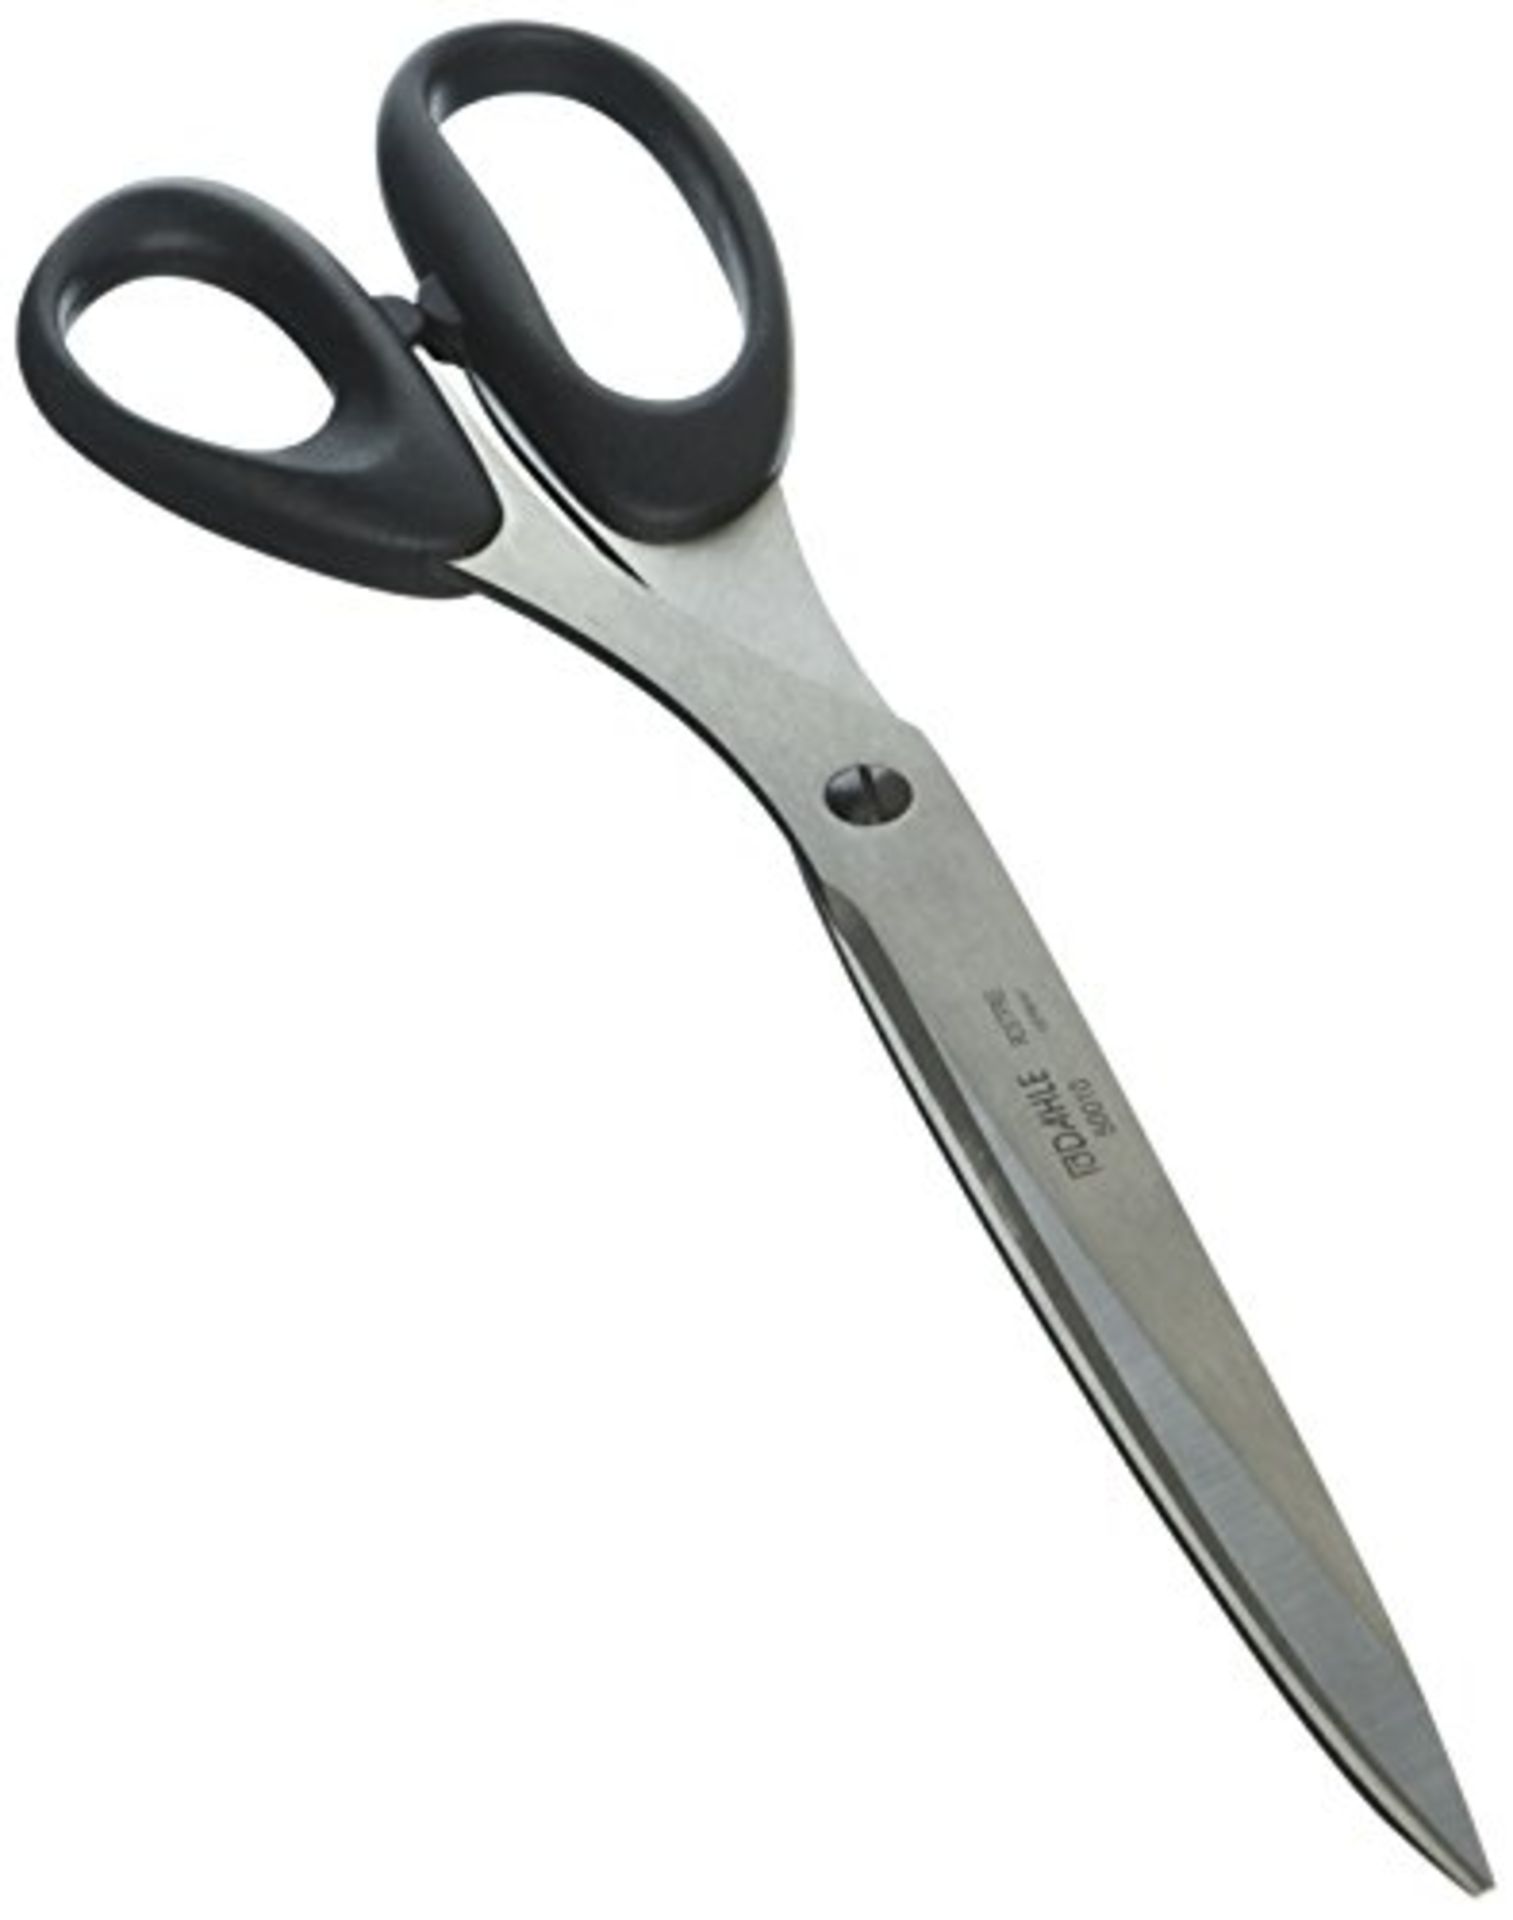 Professional Dahle Scissors - 25 cm, black